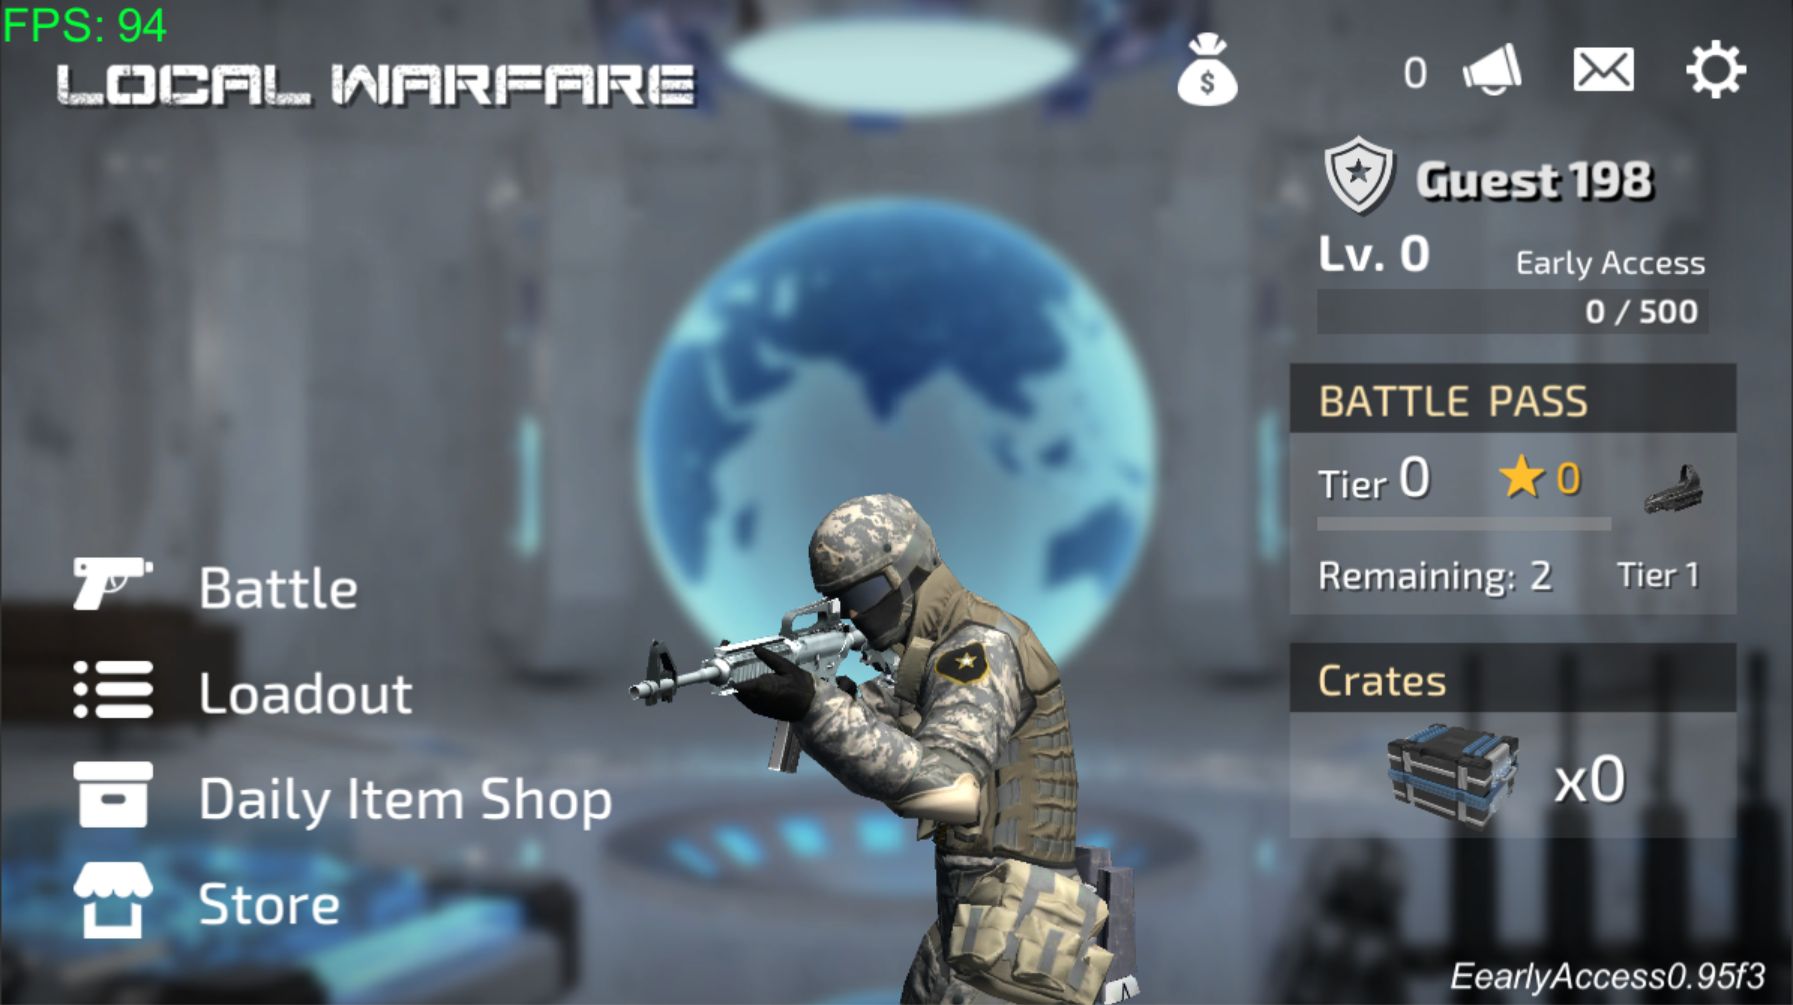 Local Warfare: Name Unknown captura de pantalla 1